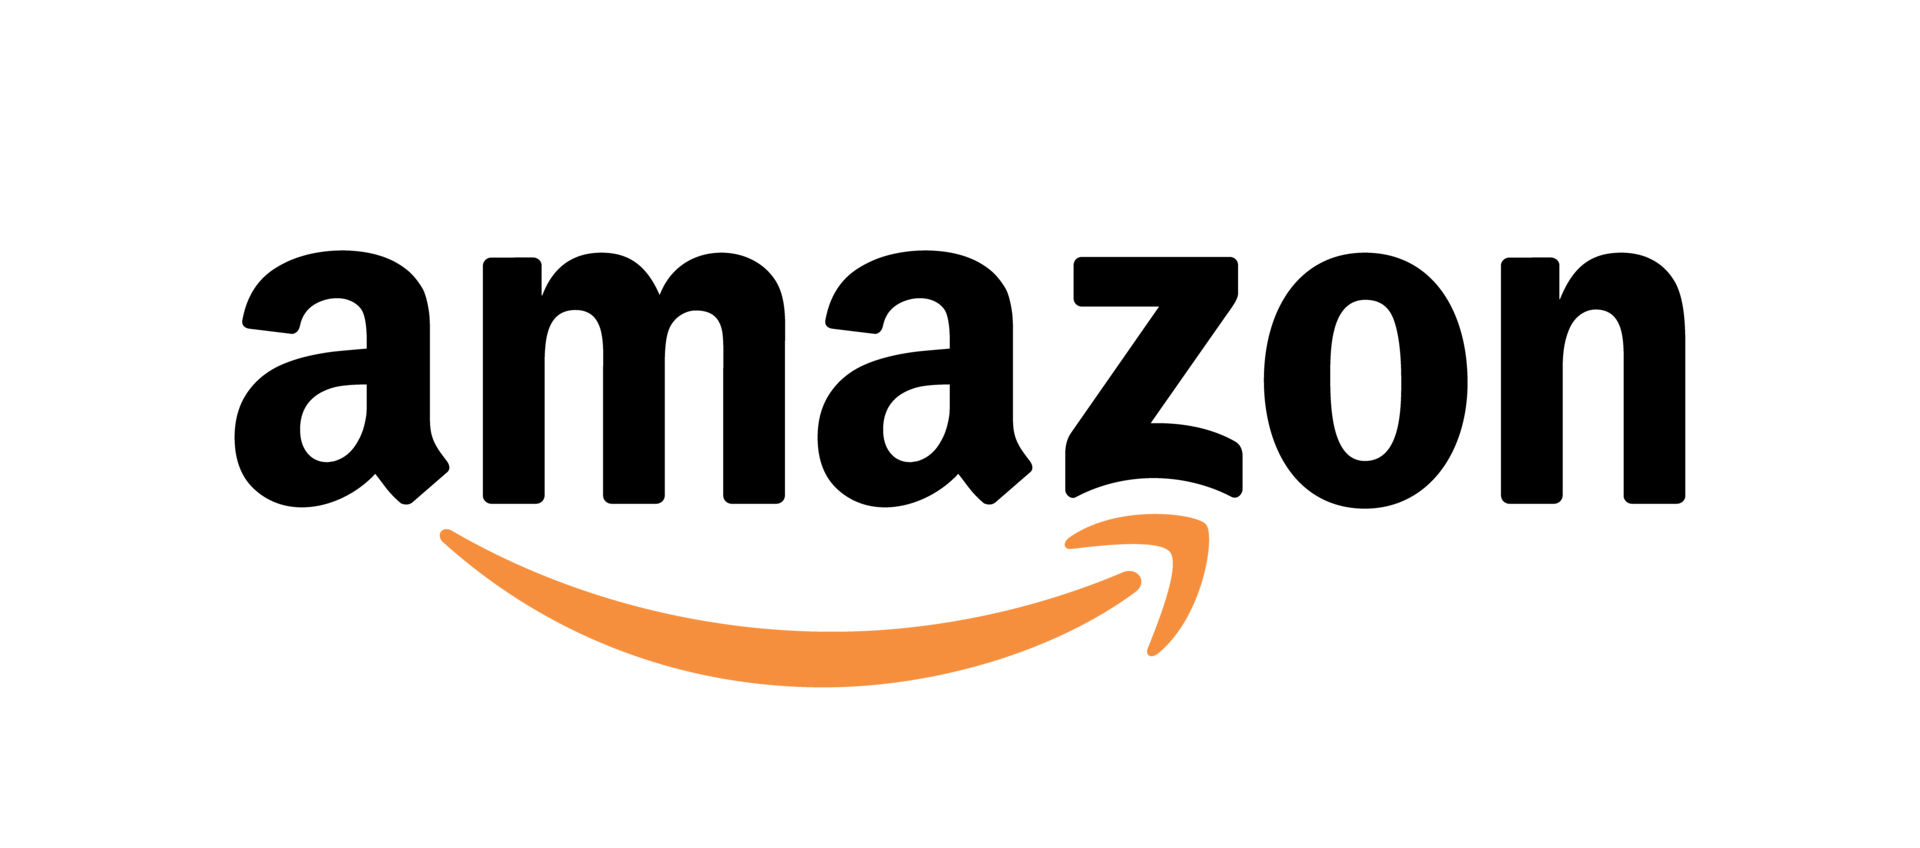 Logo de la compagnie Amazon pour illustrer son positionnement marketing